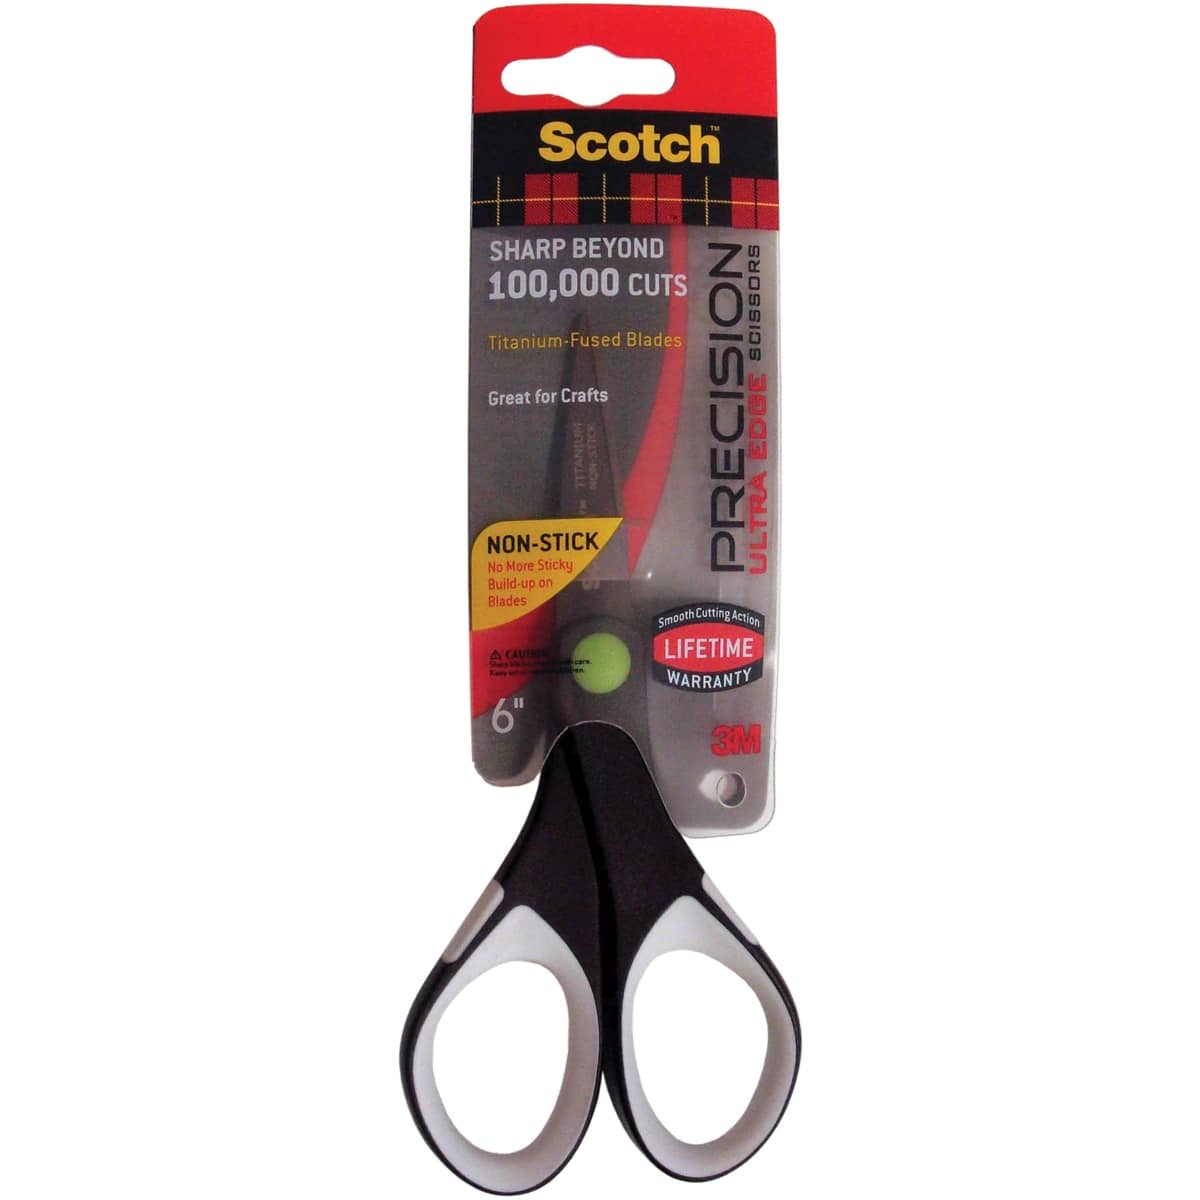 Scotch Precision Scissors, 6